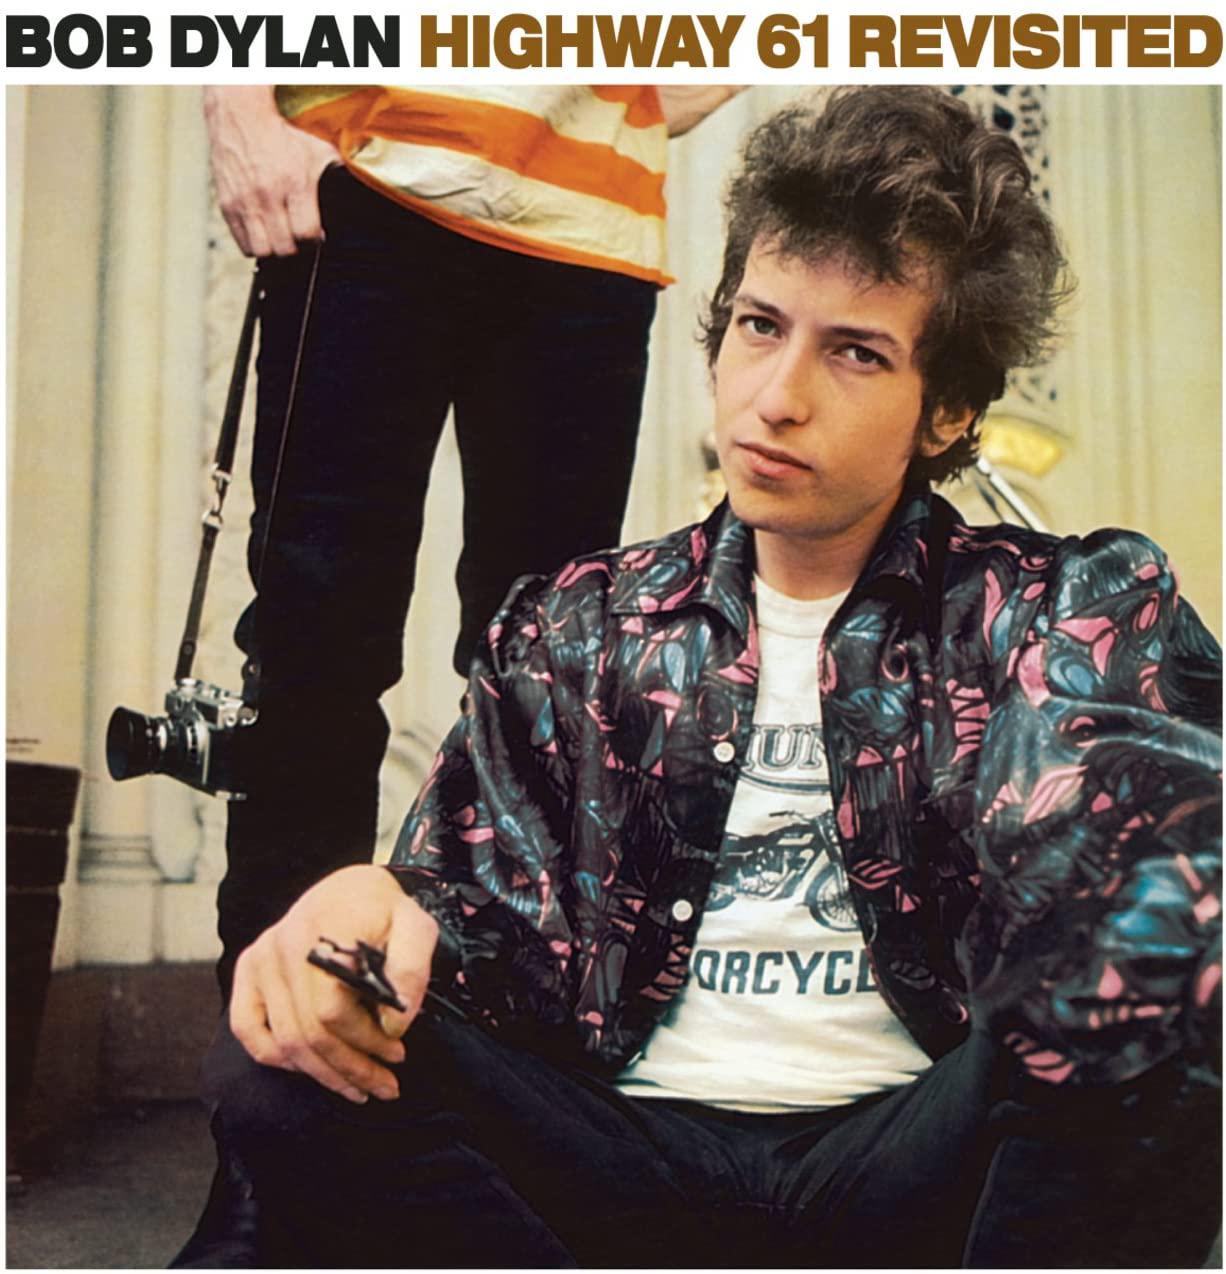 $!Vende Bob Dylan los derechos de sus canciones y futuras grabaciones a Sony Music